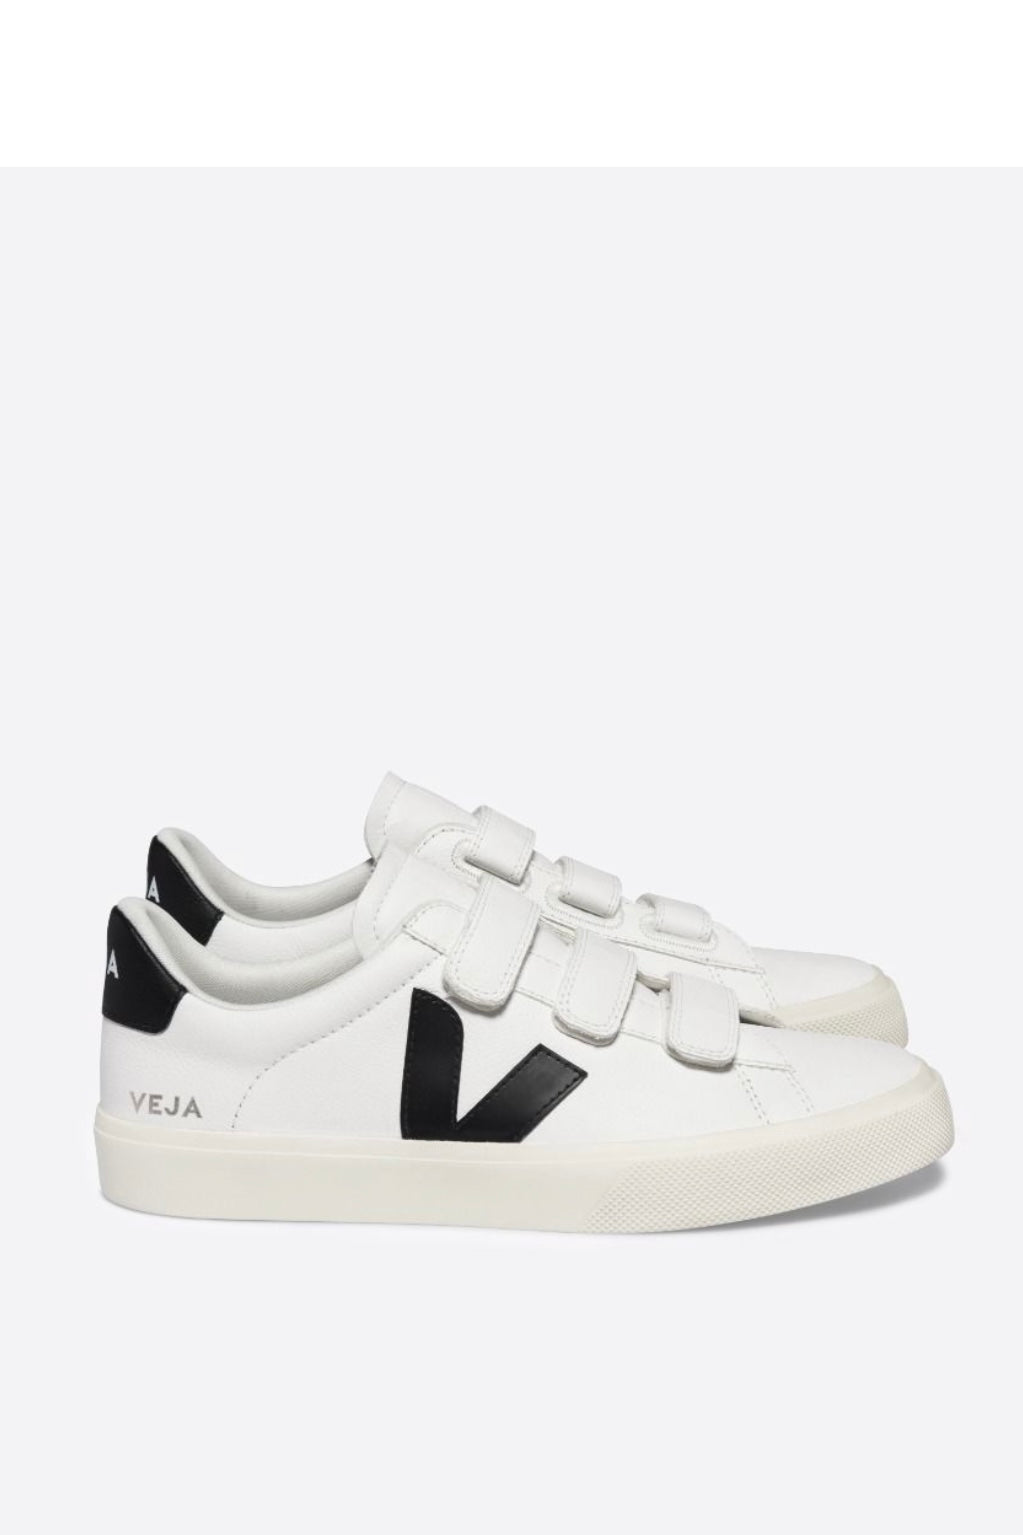 Veja - Recife Sneakers - White/Black